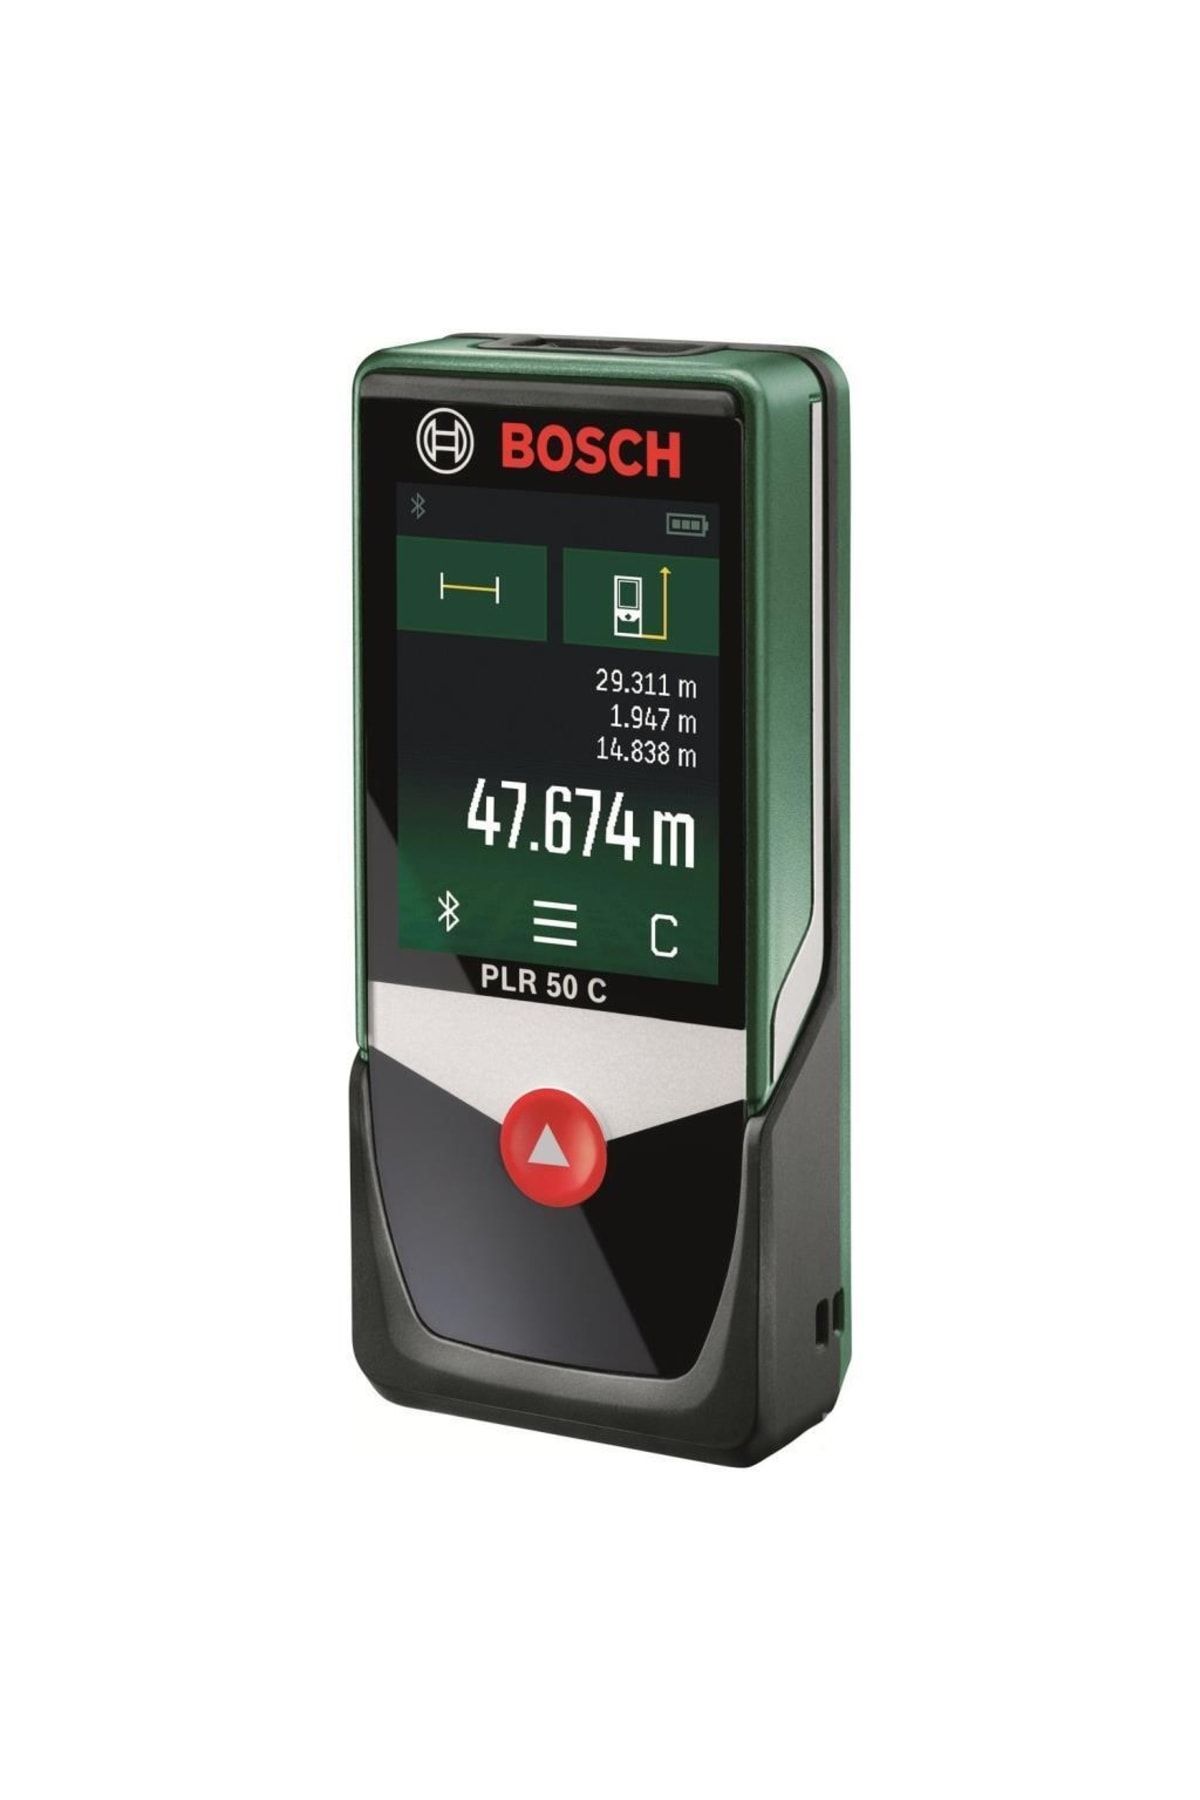 Bosch Plr 50 C Weu Dijital Lazerli Mesafe Ölçer